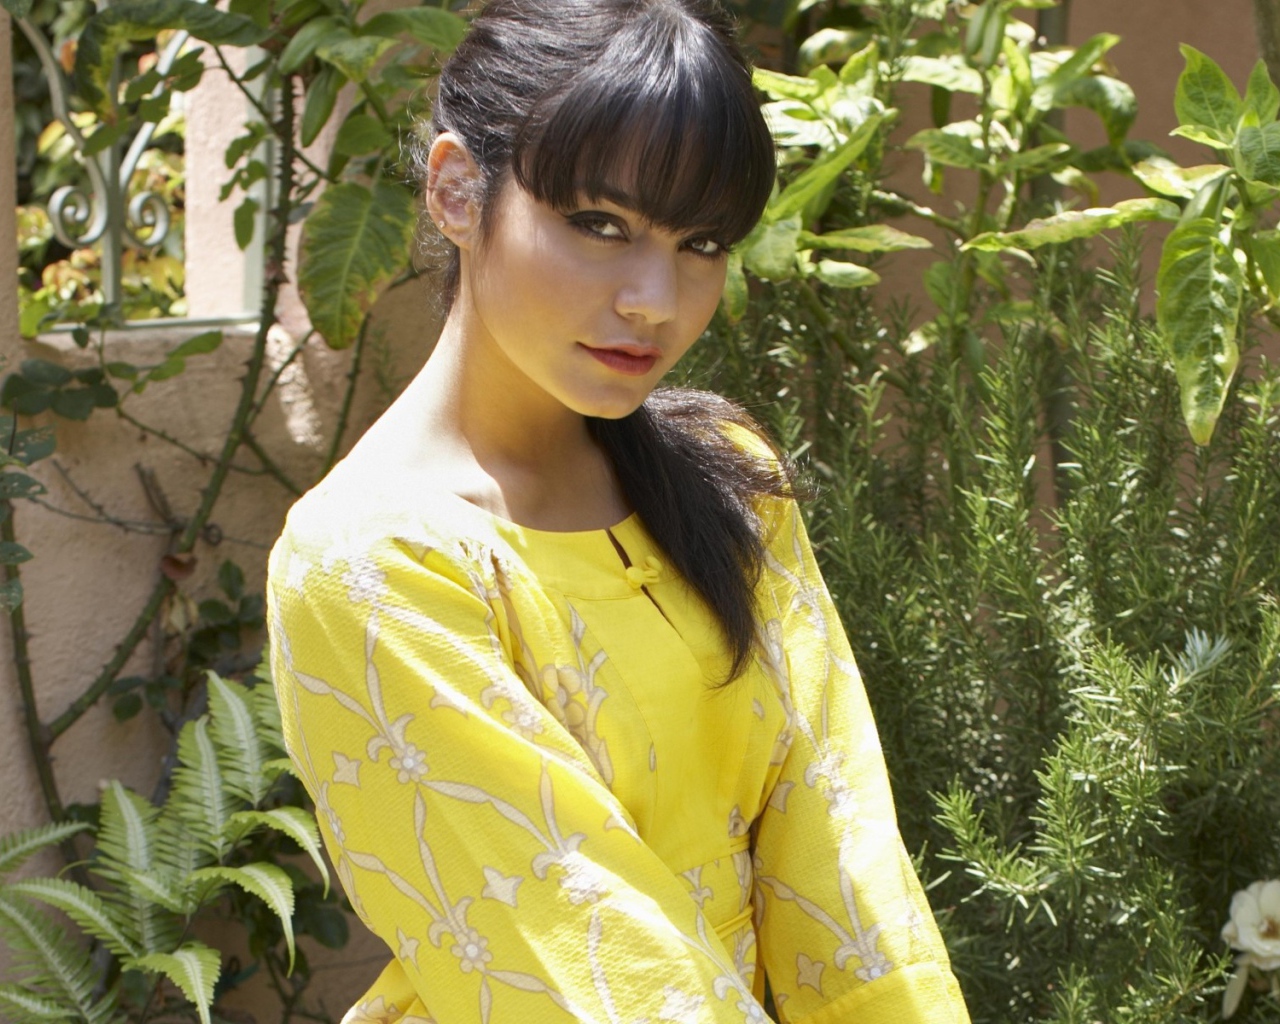 Актриса Ванесса в желтом платье